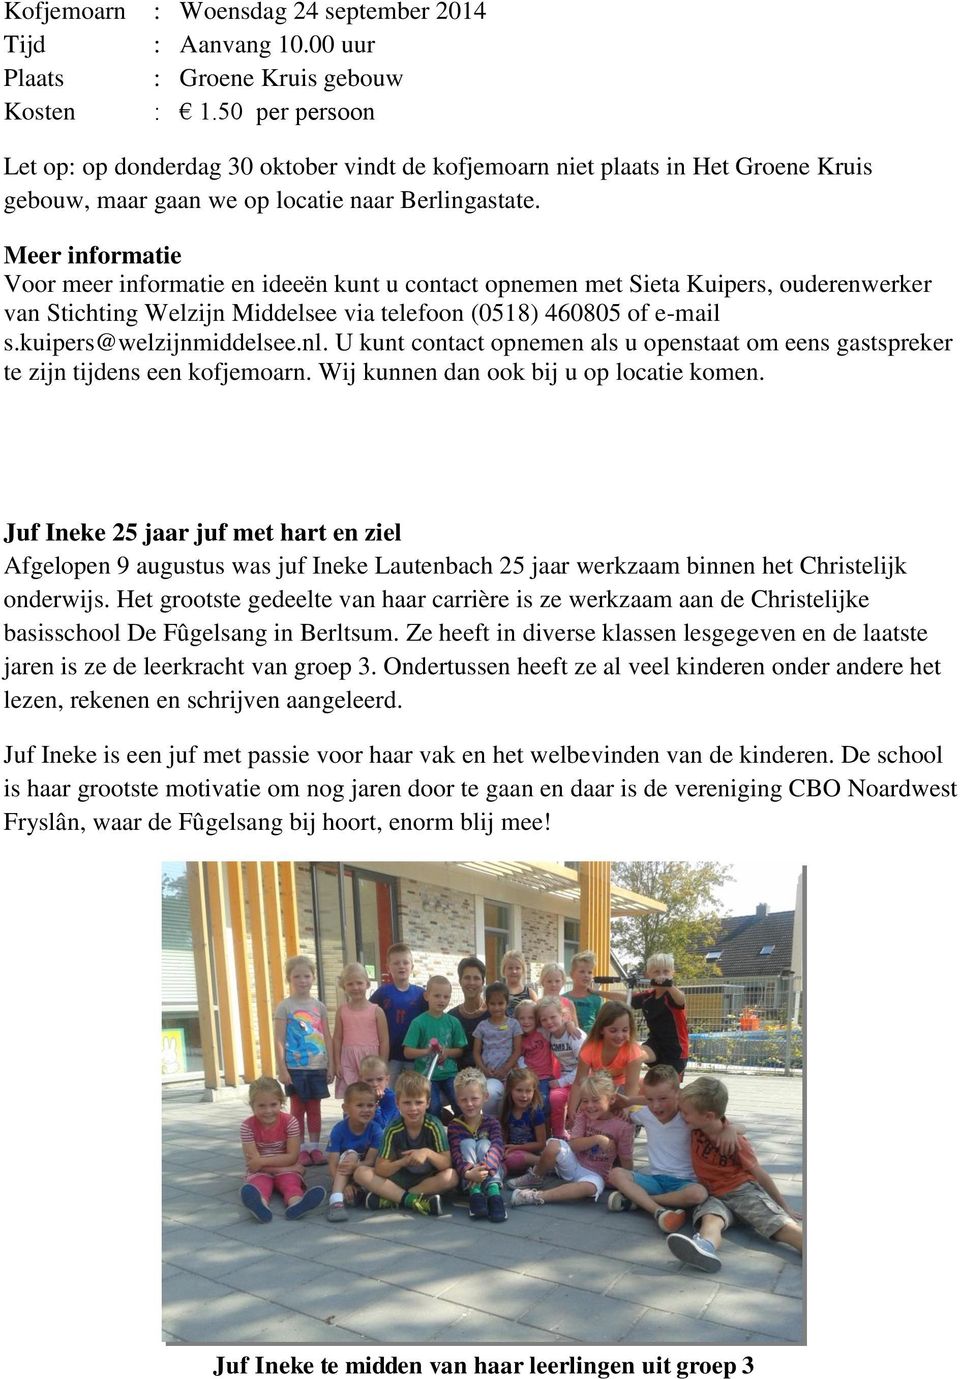 Meer informatie Voor meer informatie en ideeën kunt u contact opnemen met Sieta Kuipers, ouderenwerker van Stichting Welzijn Middelsee via telefoon (0518) 460805 of e-mail s.kuipers@welzijnmiddelsee.